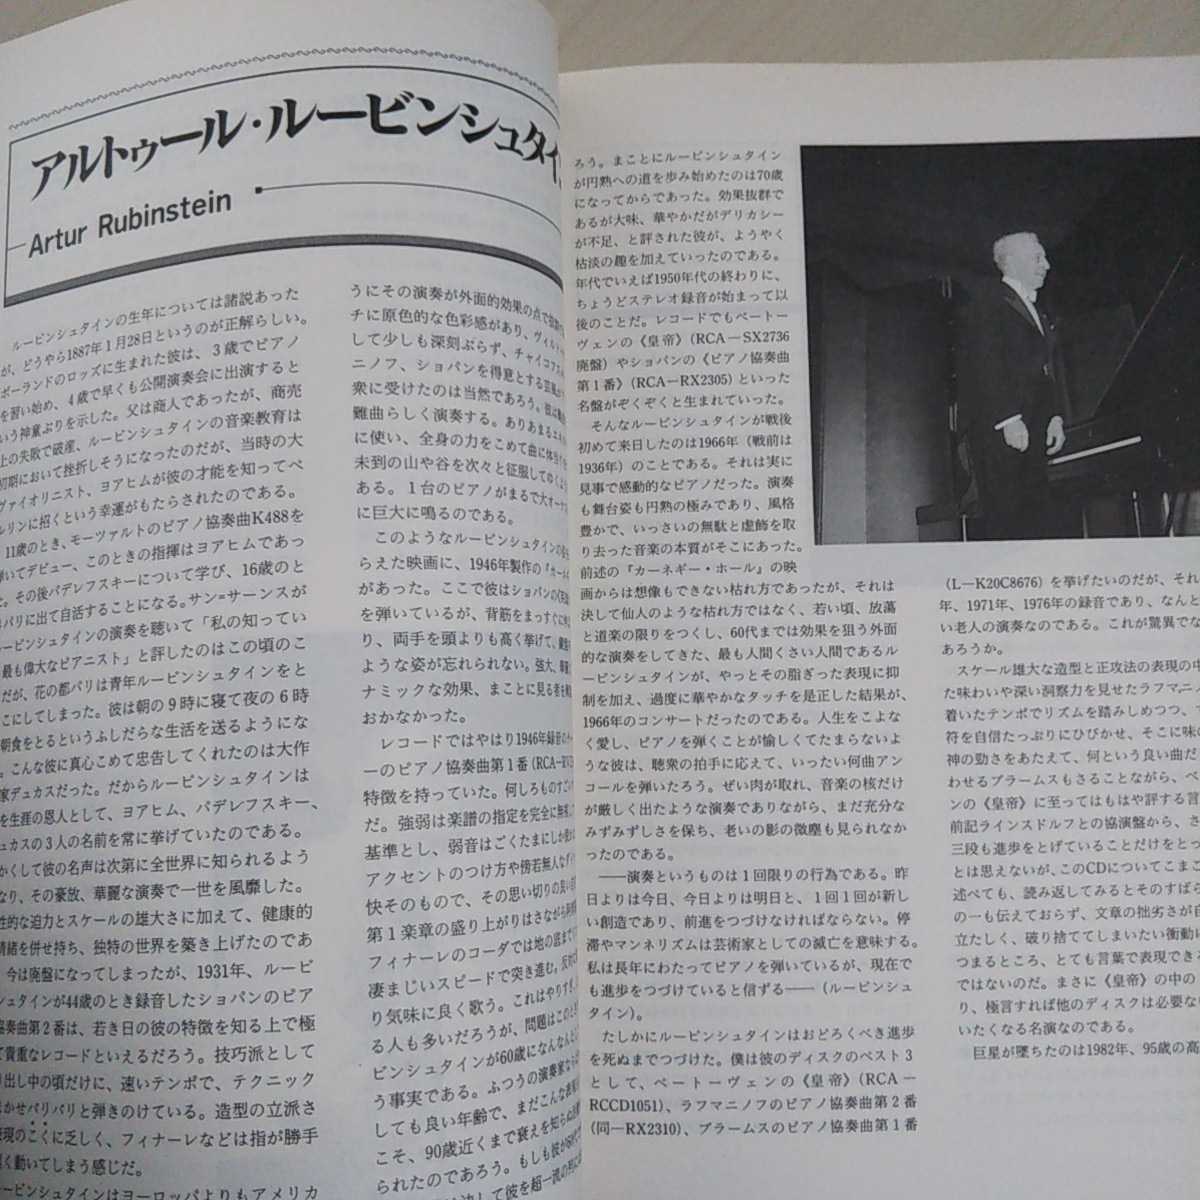  фортепьяно & Piaa ni -тактный музыка. . отдельный выпуск Showa 62 год музыка .. фирма журнал искусство piano & pianist редкий 